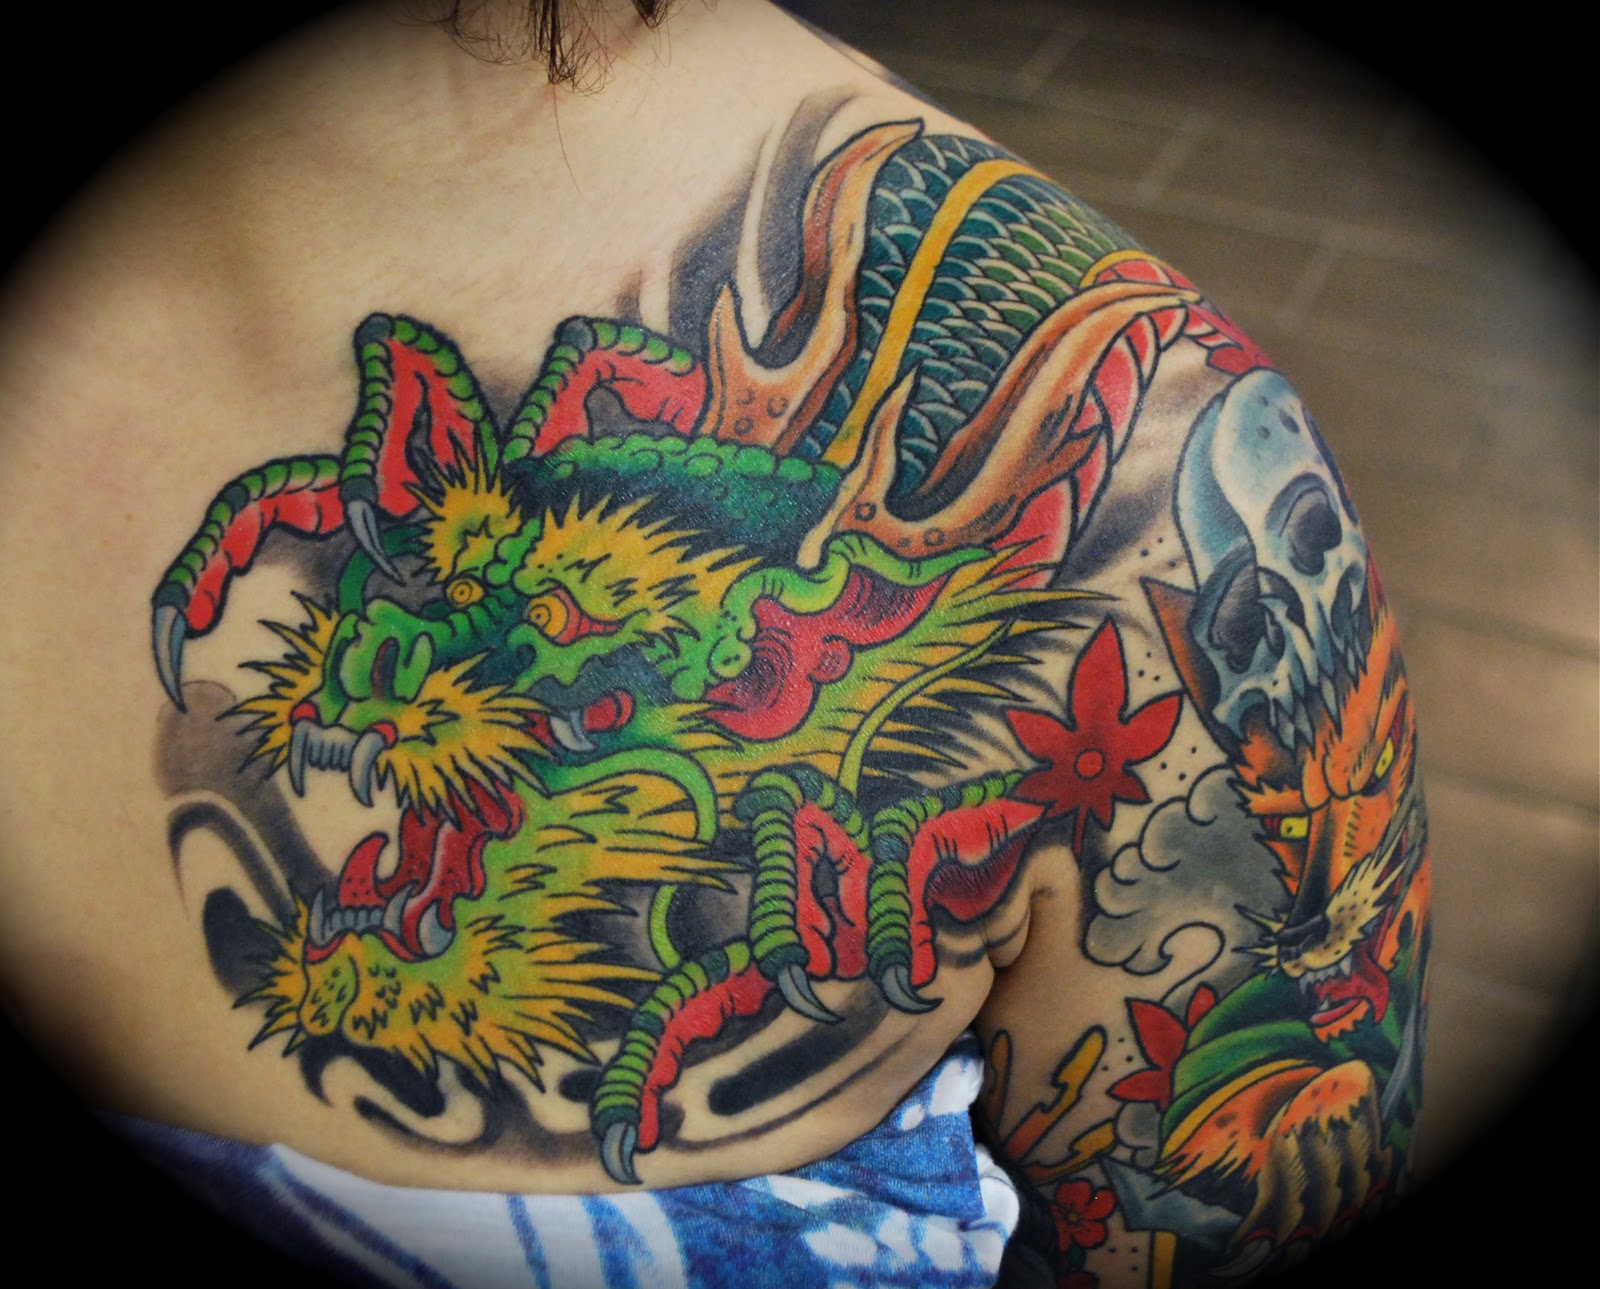 Puff the magic dragon tattoo images,best tattoo artist in las vegas 2011 .....